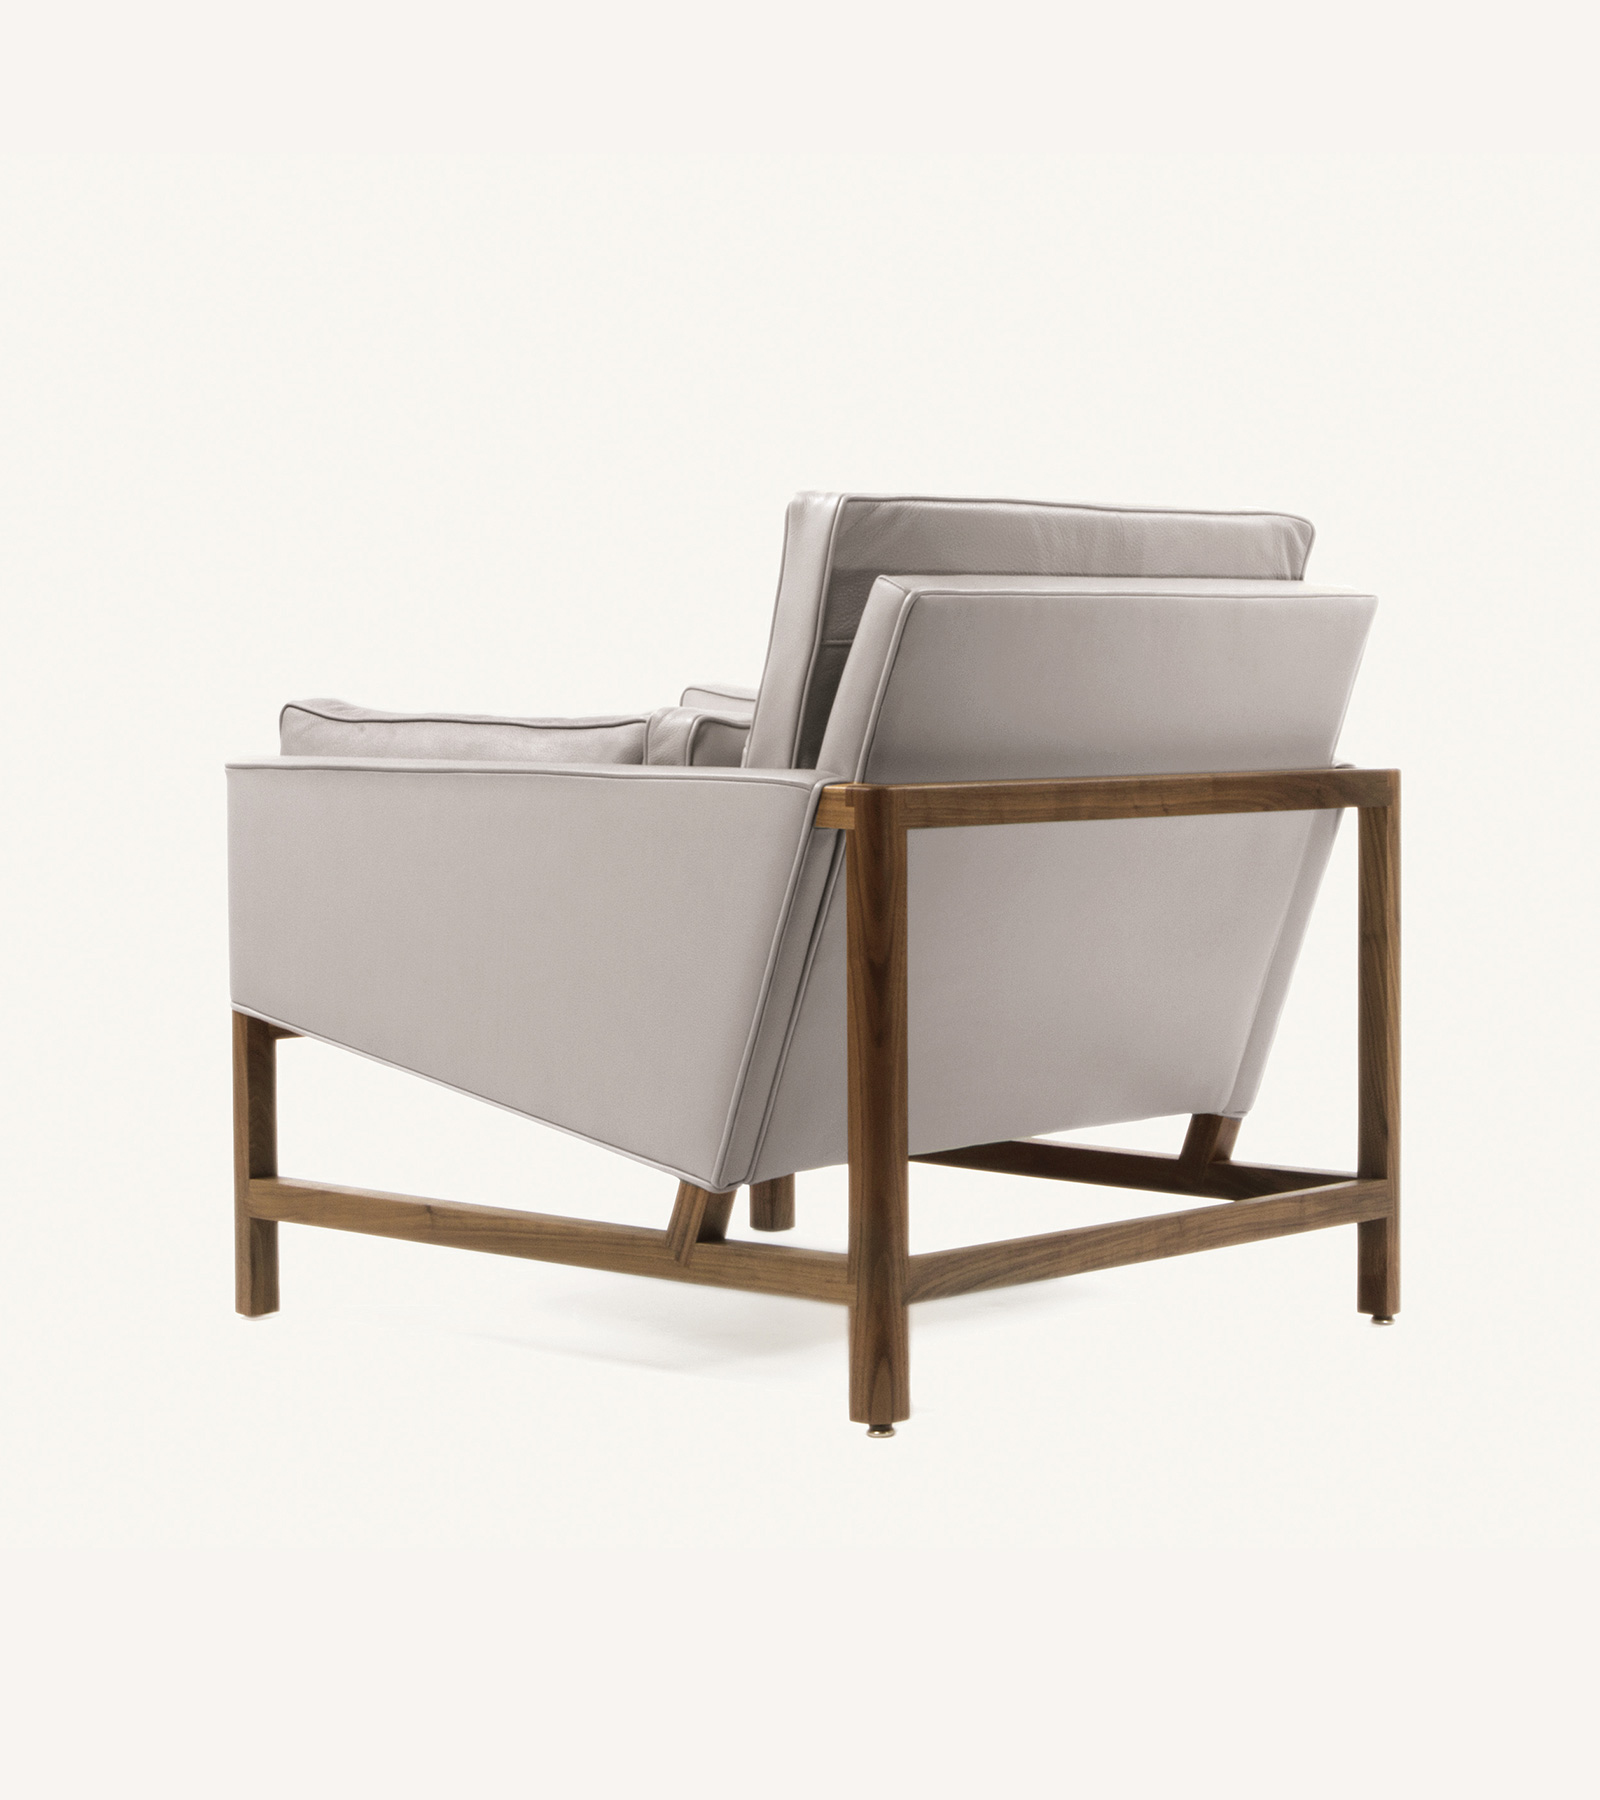 TinnappleMetz-bassamfellows-Wood-Frame-Lounge-Chair-06